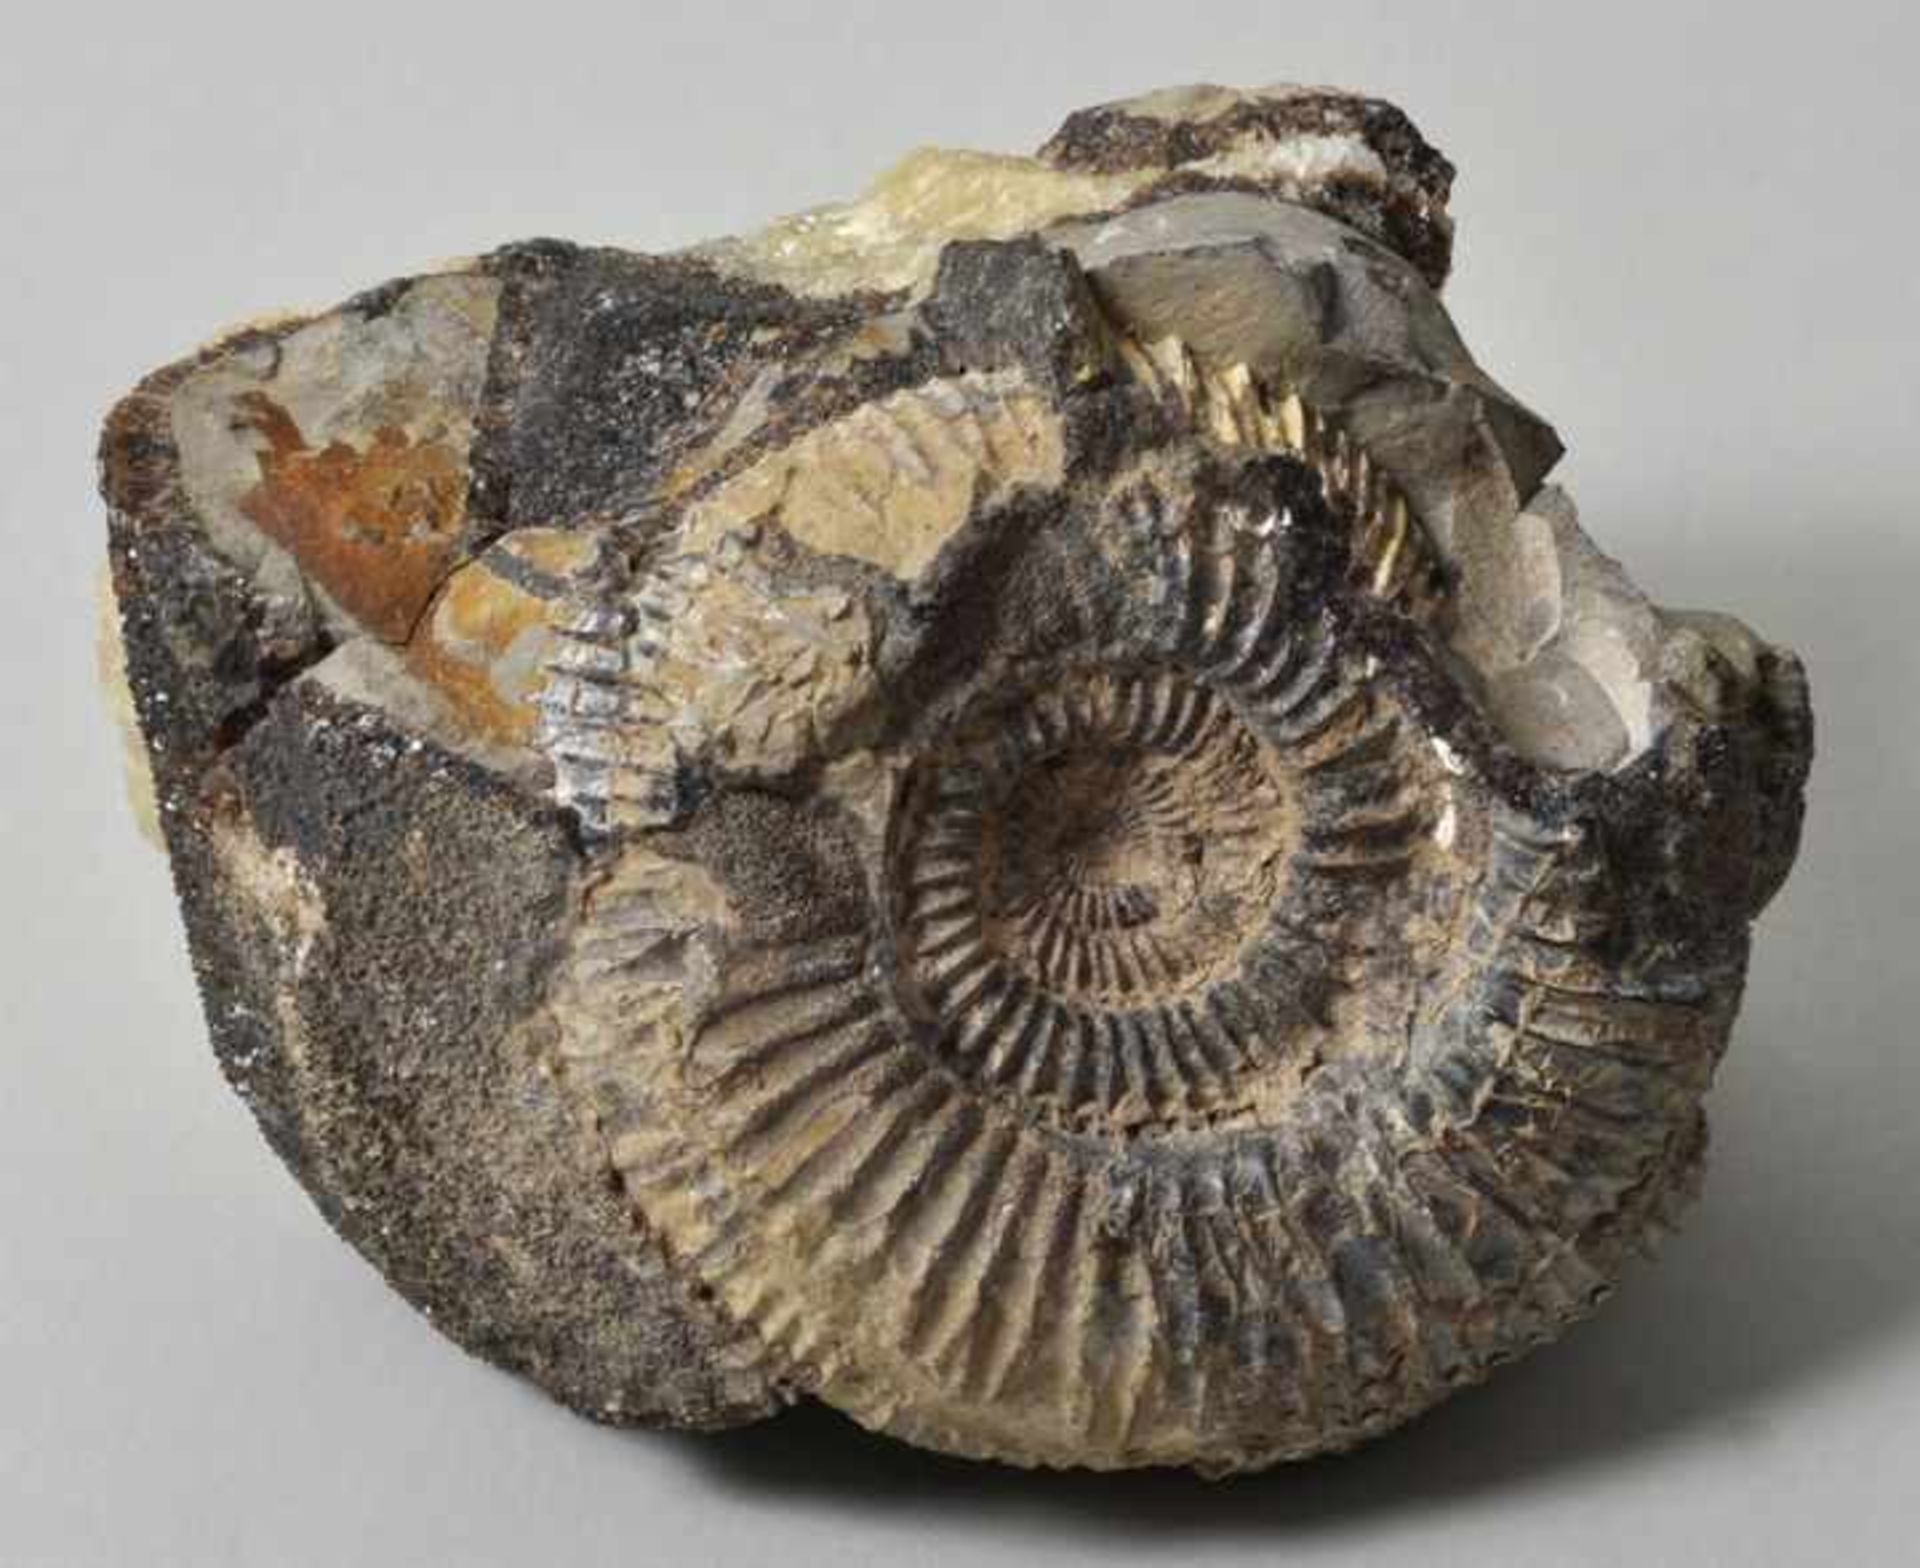 Versteinerung. Ammonit.Teils freigelegte Versteinerung eines Divisosphinctes besairiei in